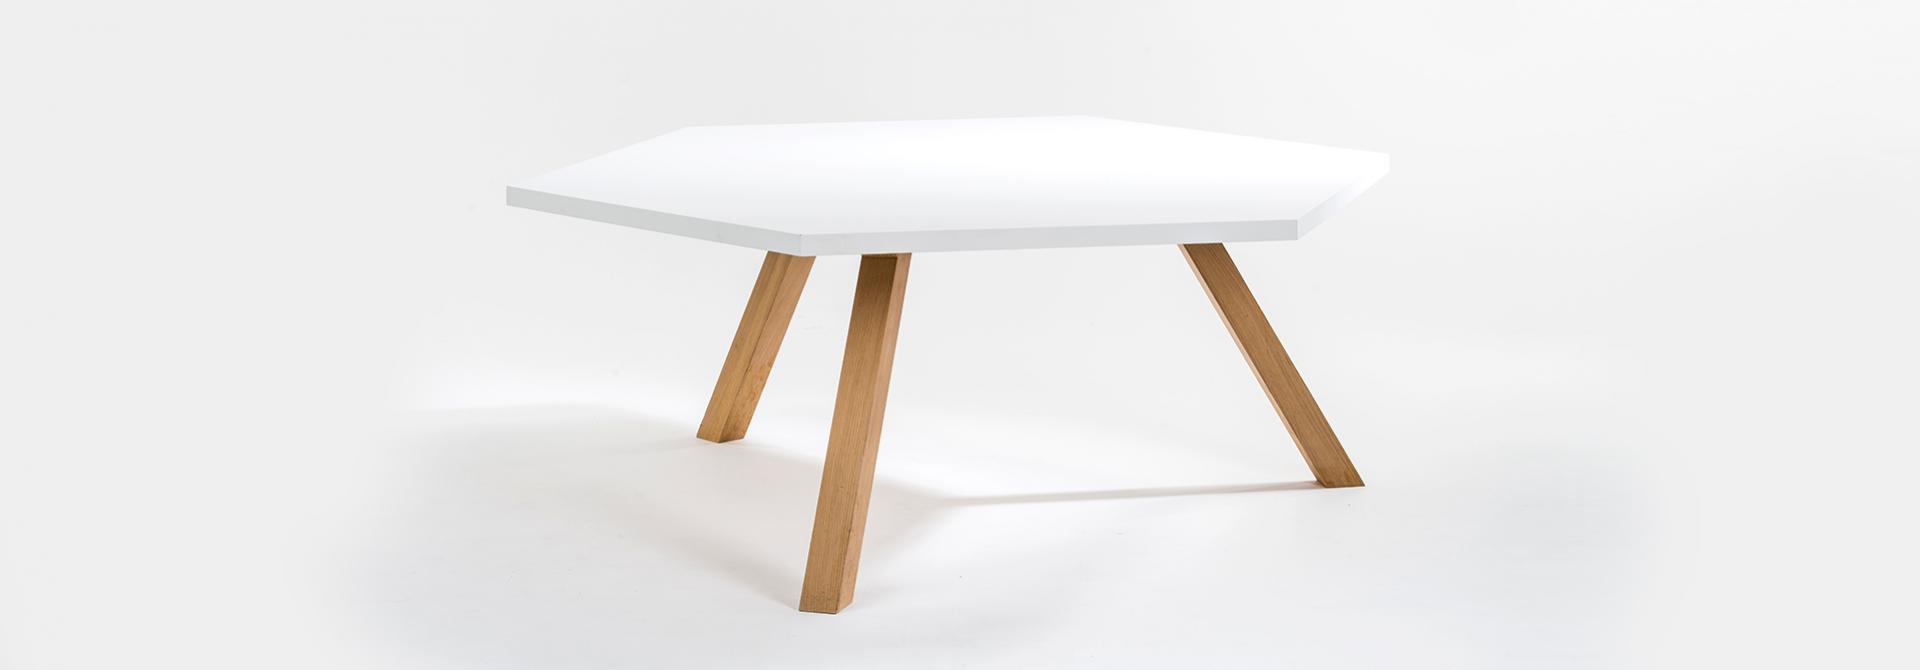 table hex blanche et bois pieds de table vue de face